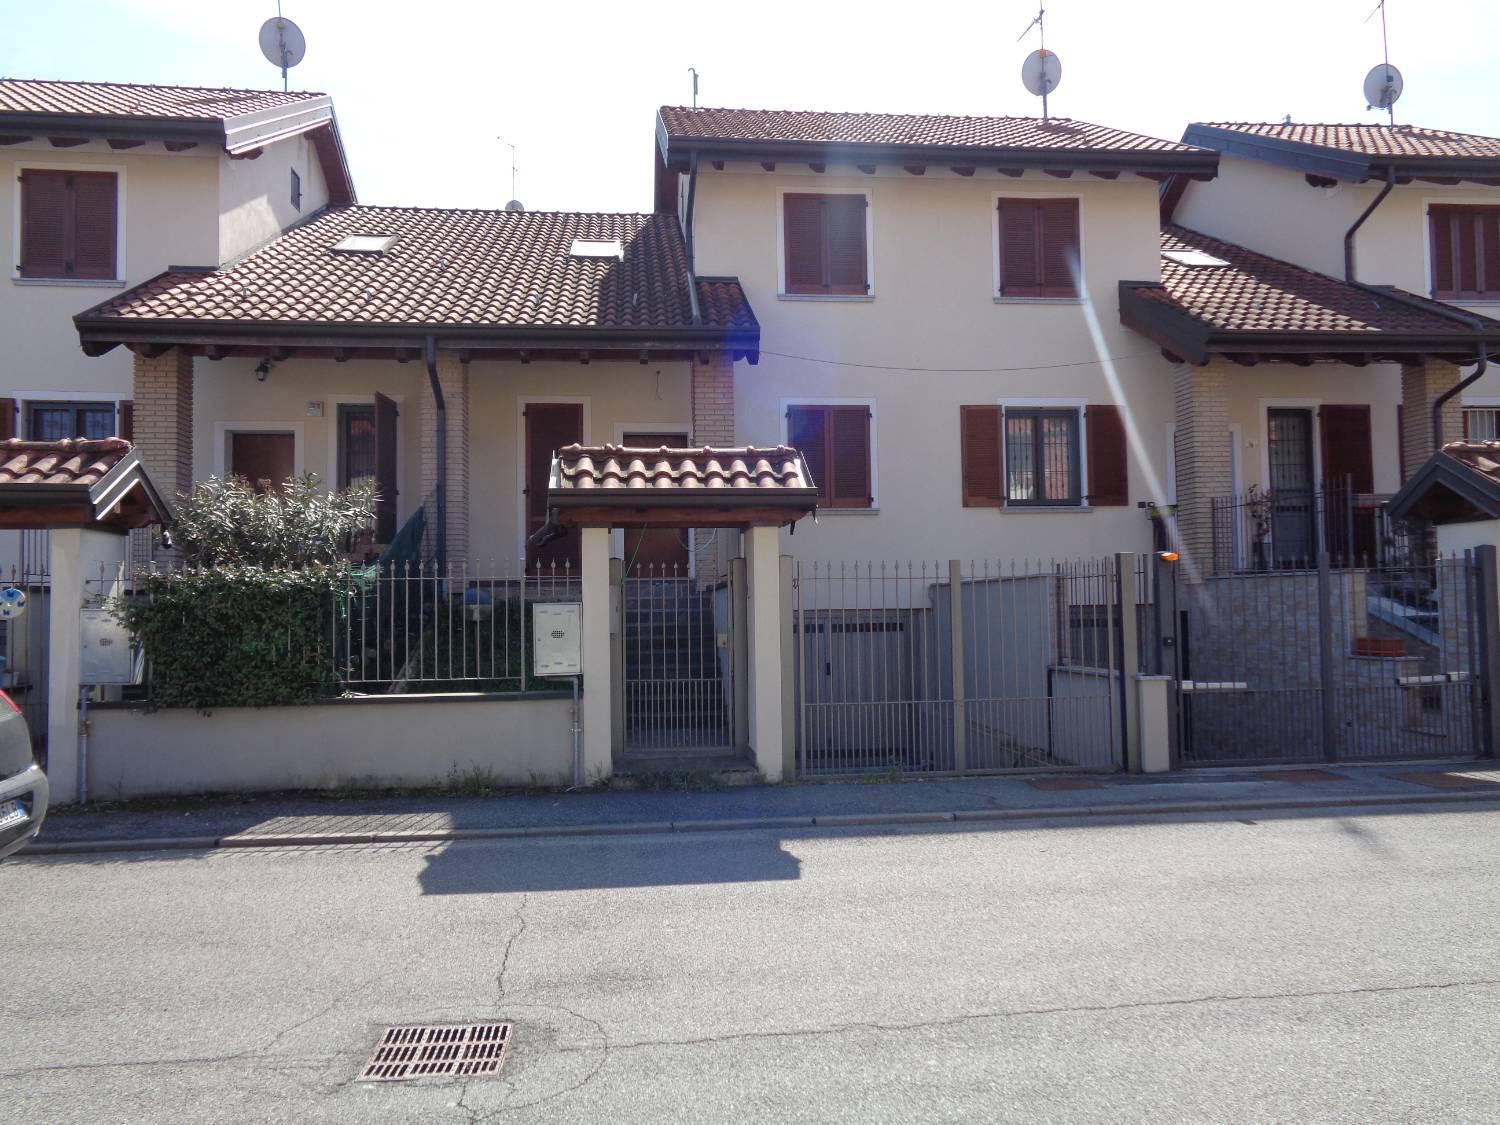 Villa a Schiera in vendita a Cerro al Lambro, 4 locali, zona zo, prezzo € 320.000 | PortaleAgenzieImmobiliari.it